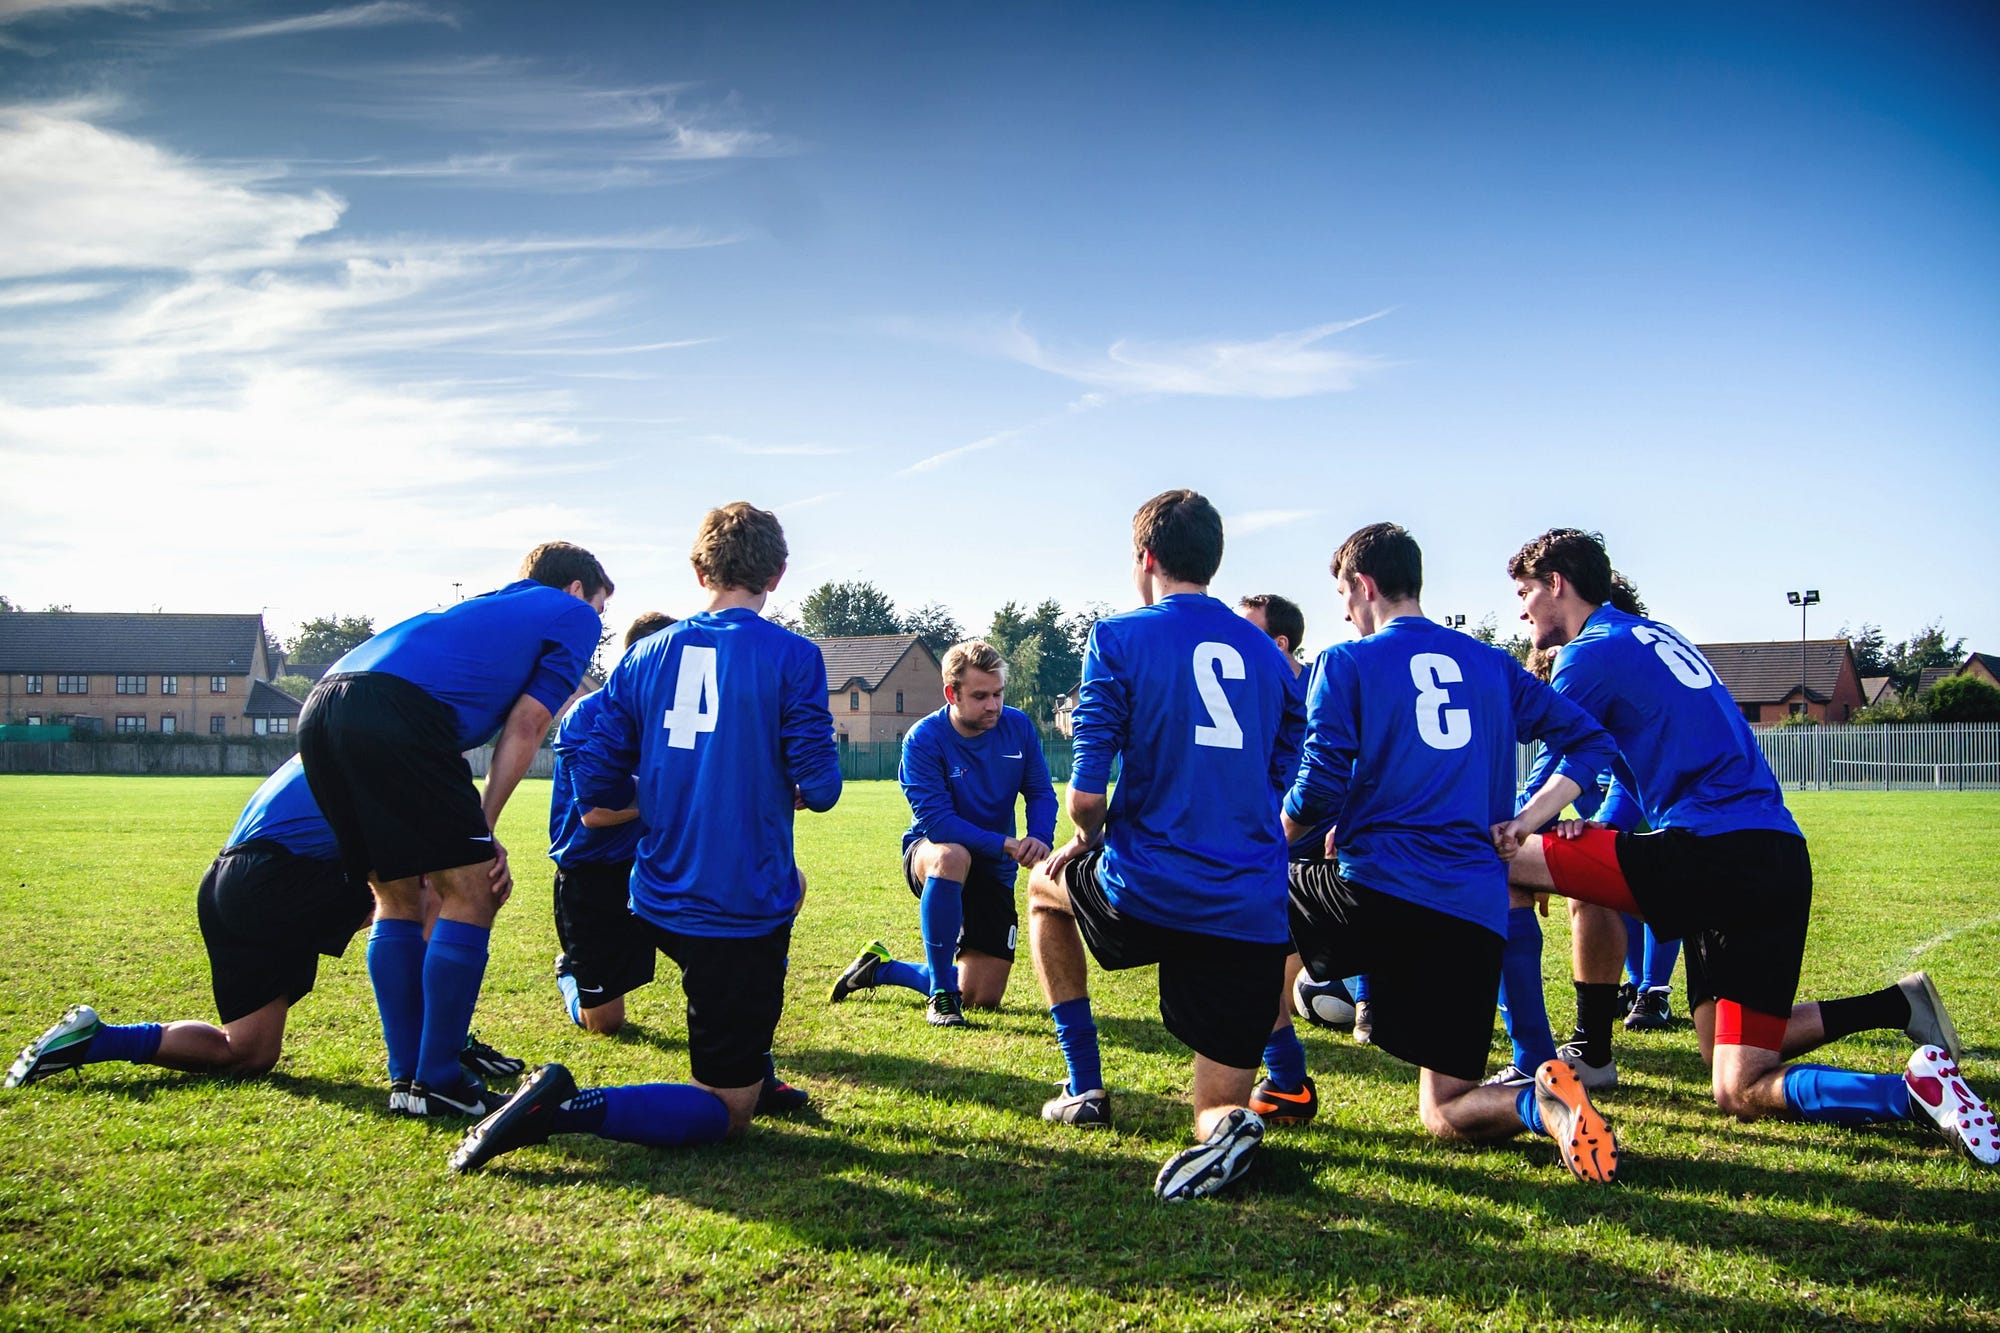 Foto Um grupo de pessoas jogando futebol – Imagem de Mannschaft grátis no  Unsplash